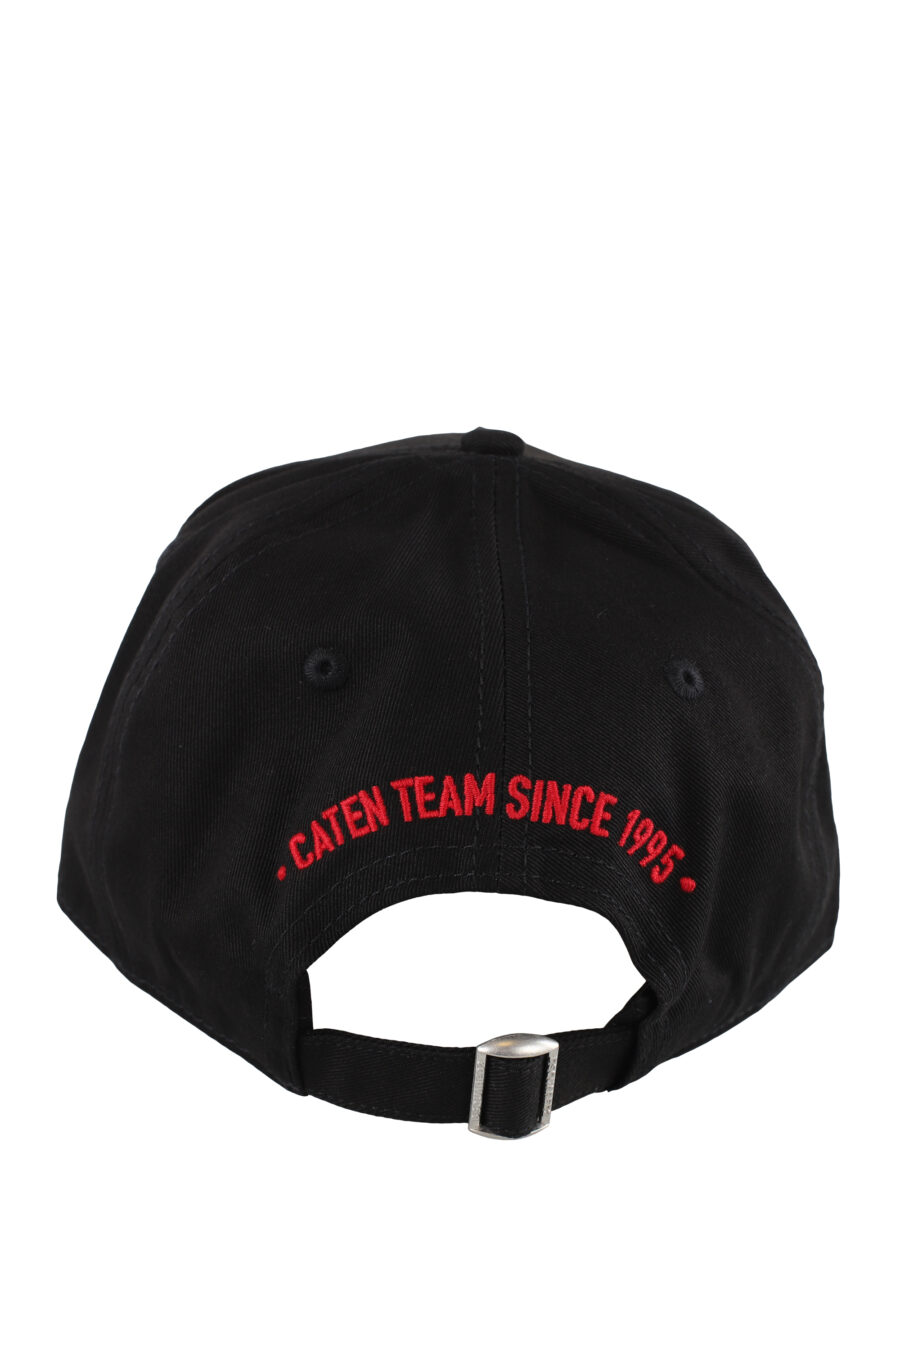 Schwarze Mütze mit Aufnäher und roten Details - IMG 5171